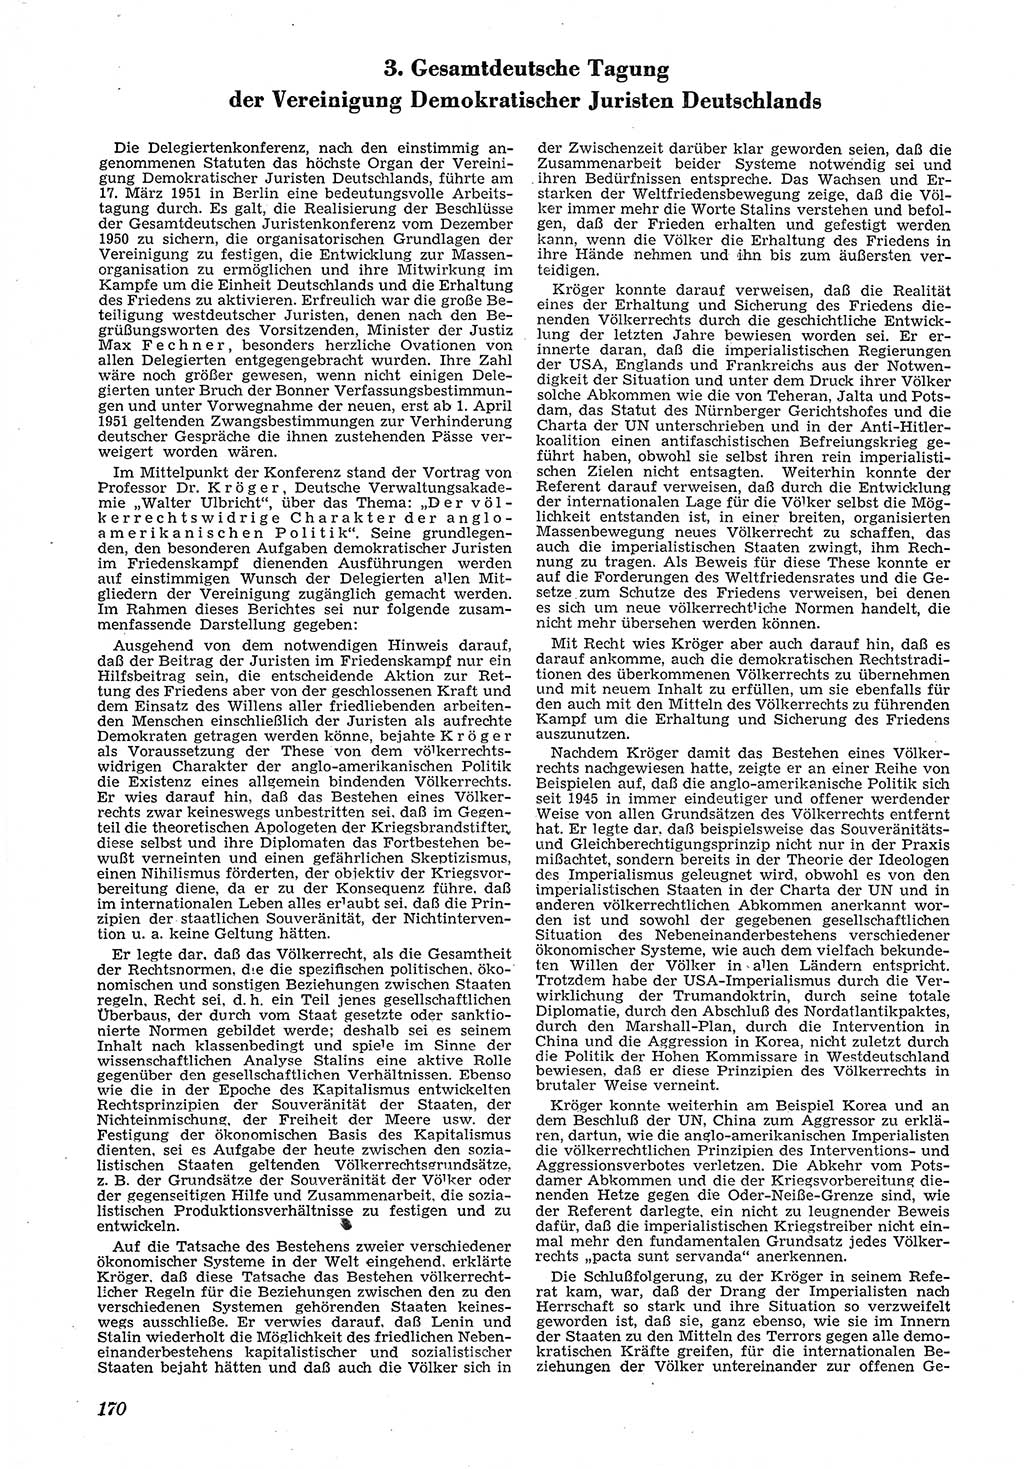 Neue Justiz (NJ), Zeitschrift für Recht und Rechtswissenschaft [Deutsche Demokratische Republik (DDR)], 5. Jahrgang 1951, Seite 170 (NJ DDR 1951, S. 170)